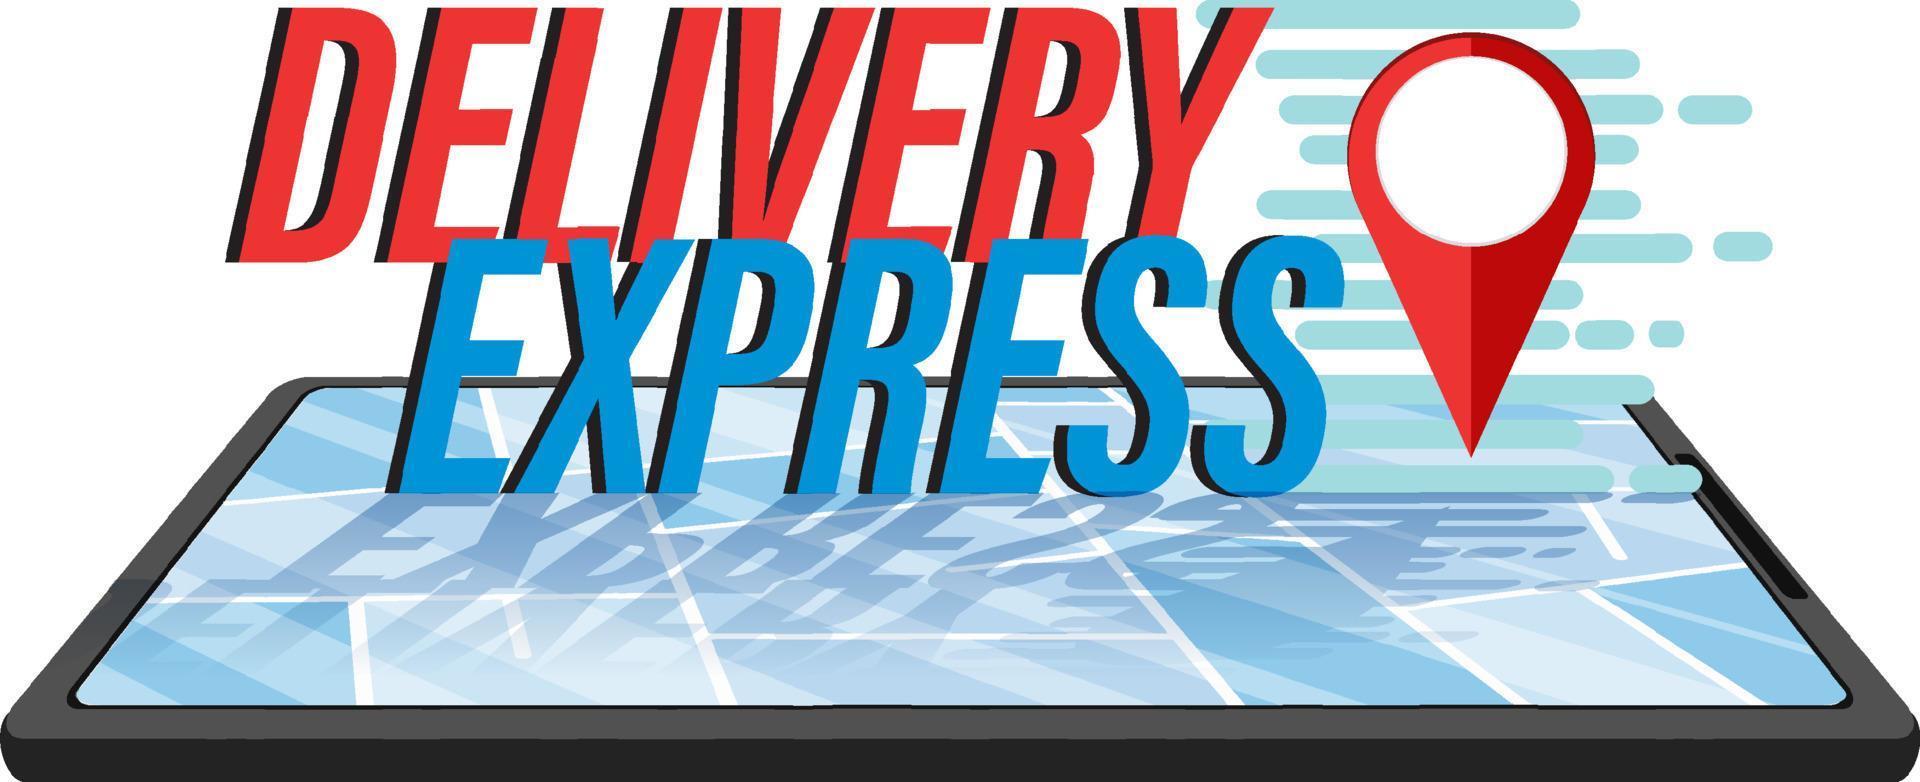 levering express-logo met locatiepin op smartphone vector